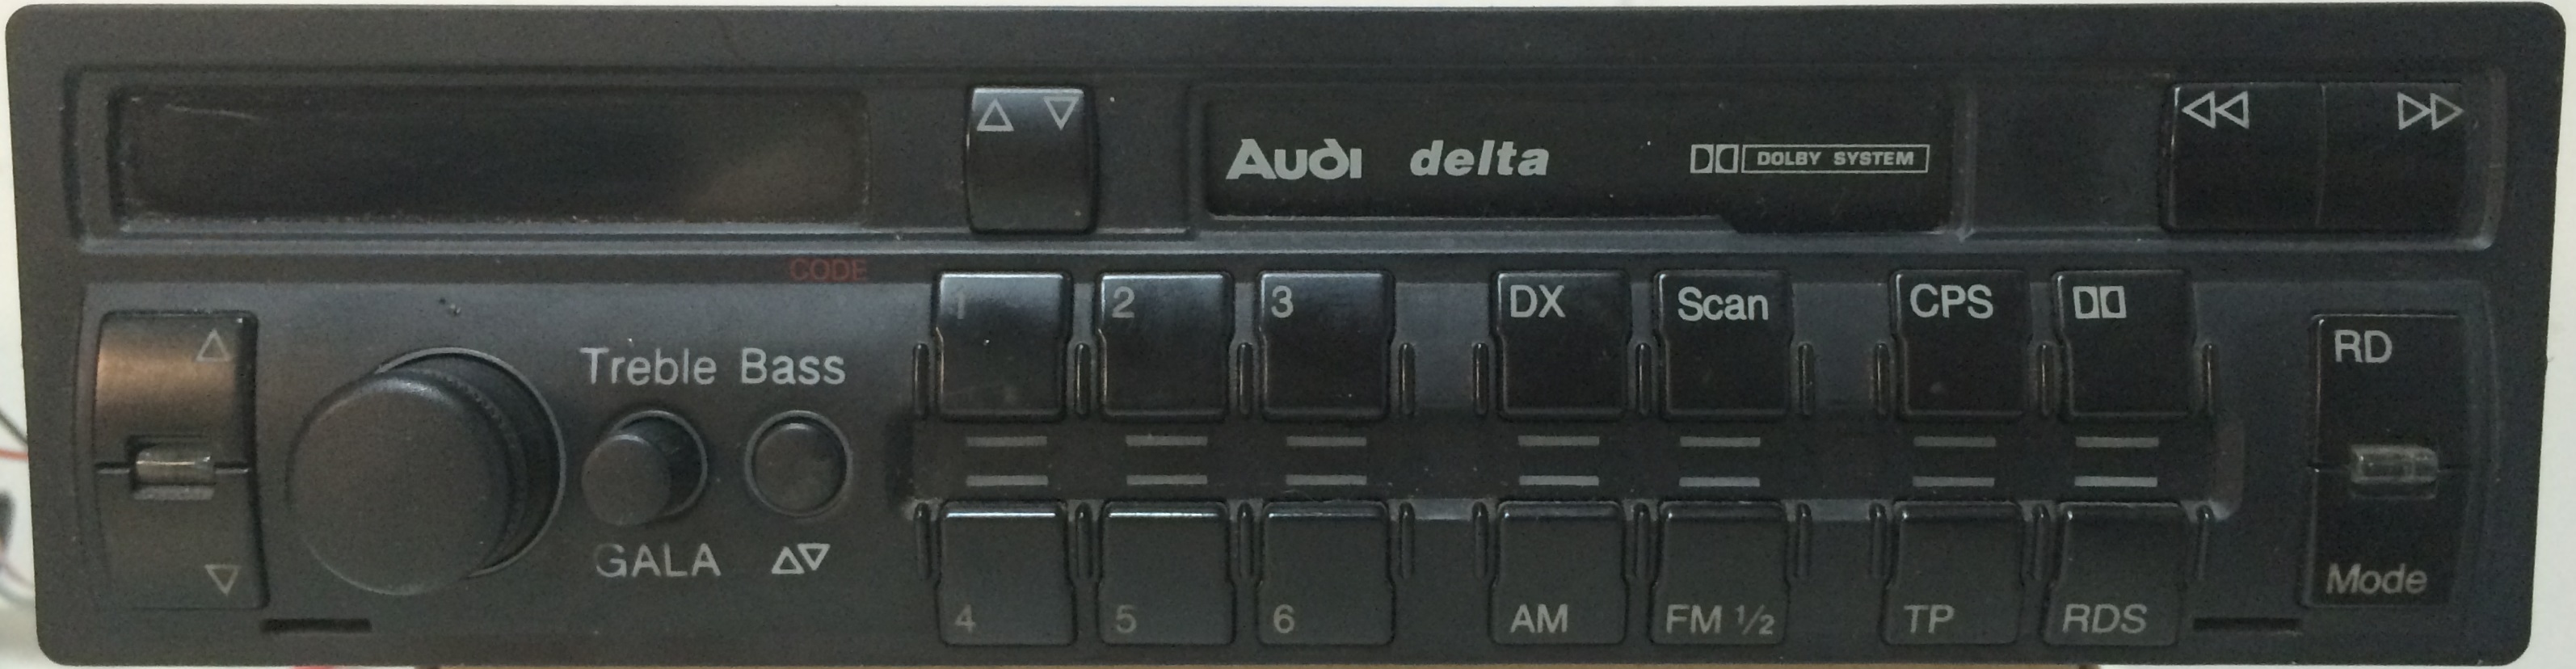 AUDI-Delta-Blaupunkt